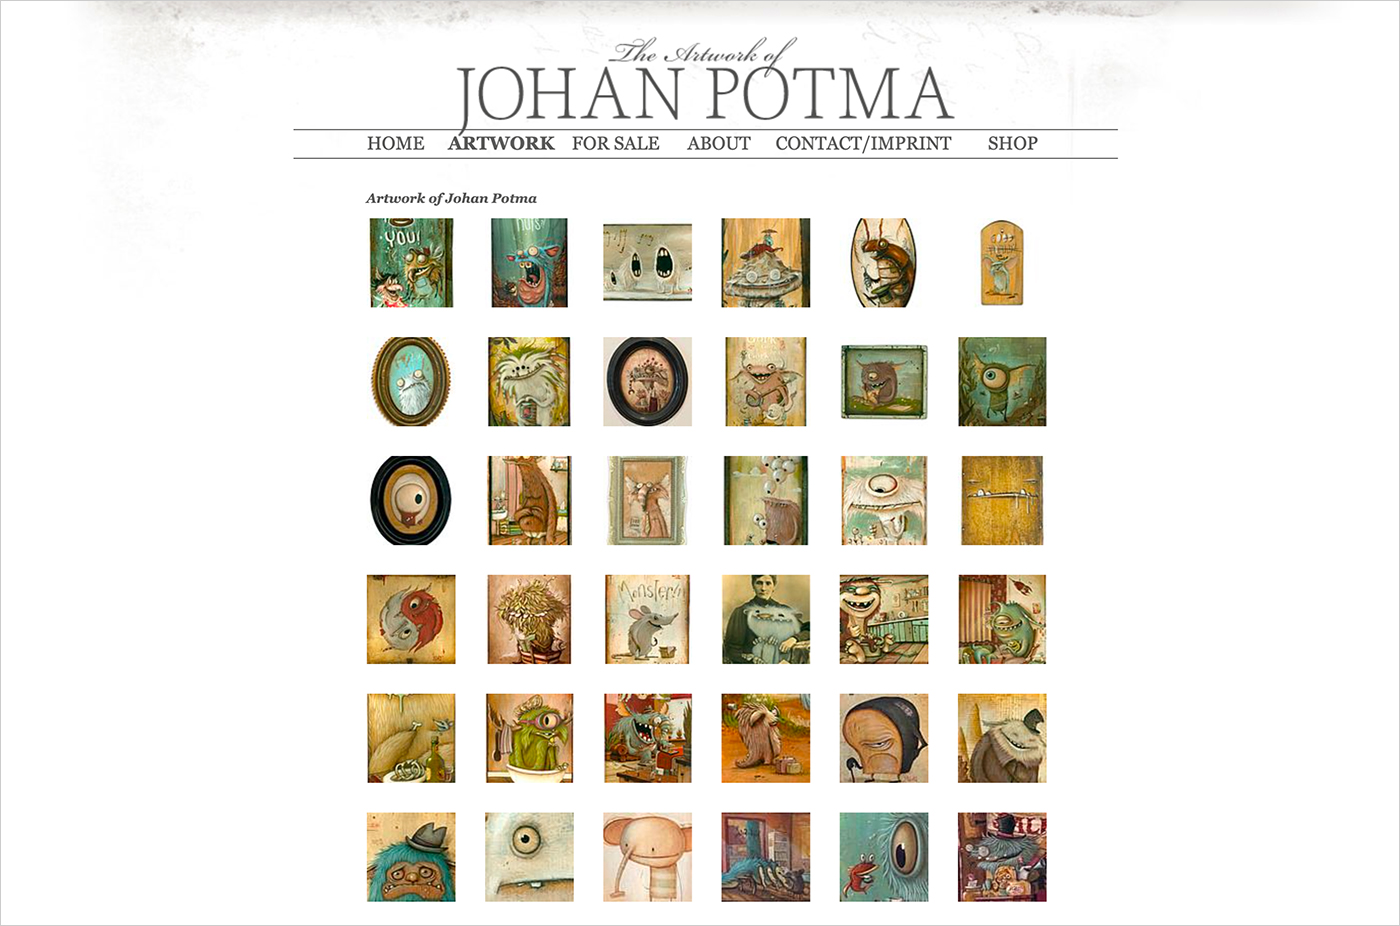 The artwork of Johan Potmaウェブサイトの画面キャプチャ画像